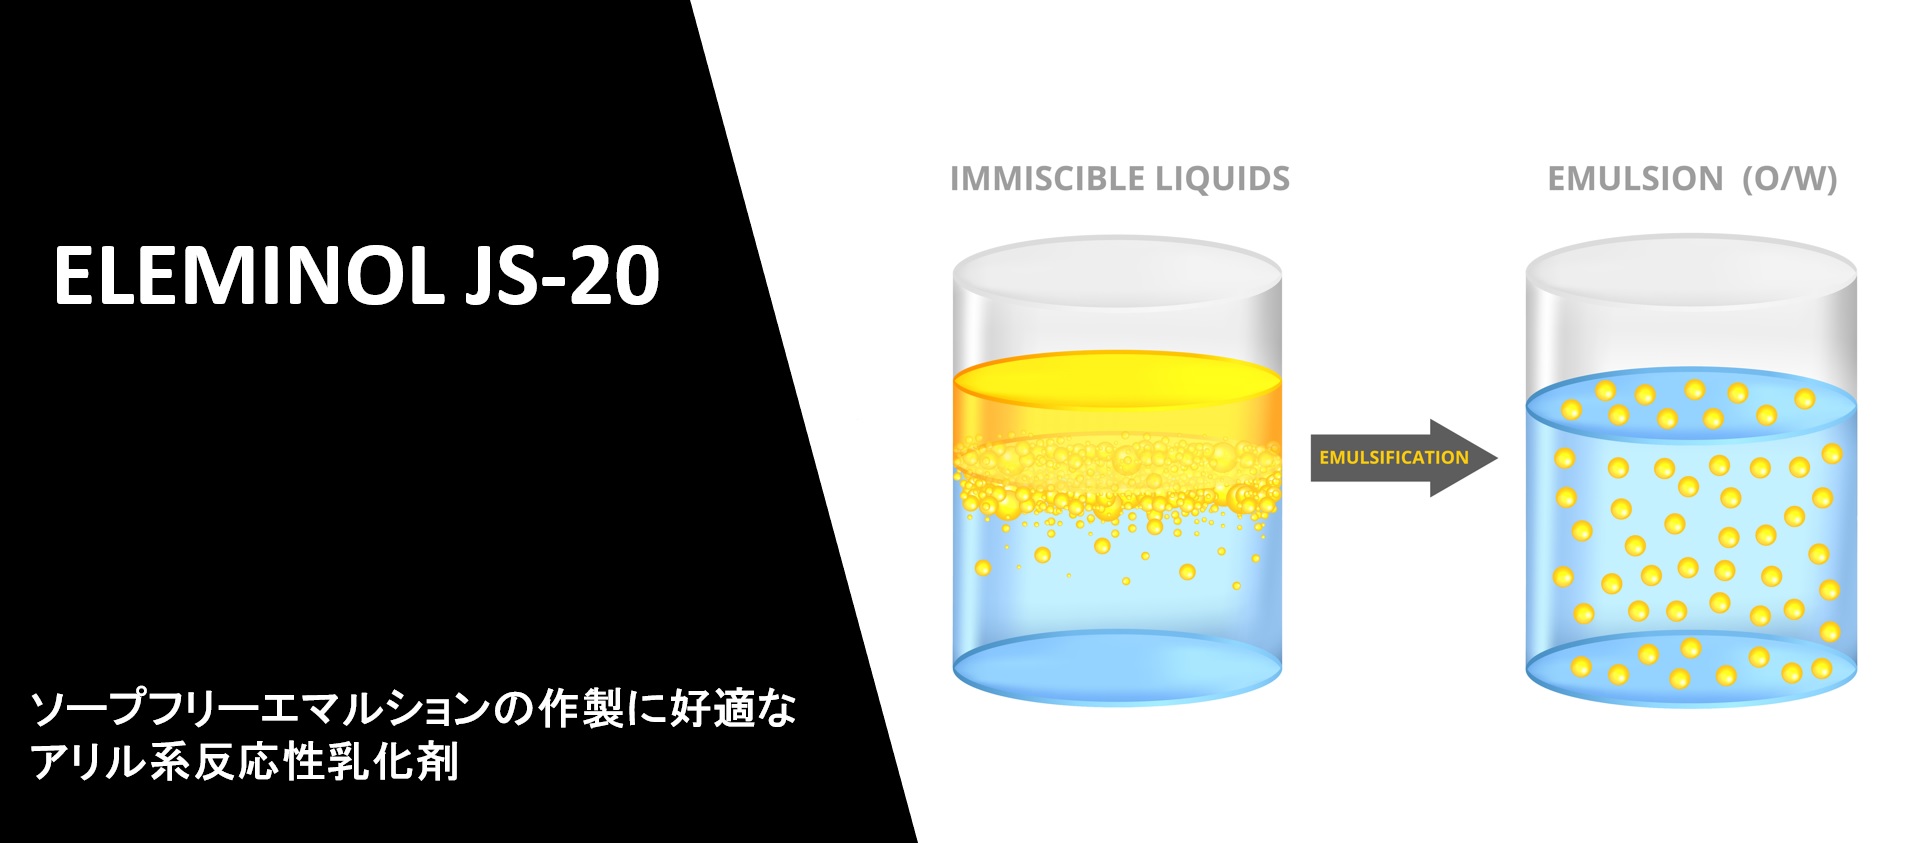 乳化重合用反応性乳化剤(アリル系)『エレミノール JS-20』製品紹介ページを公開いたしました。